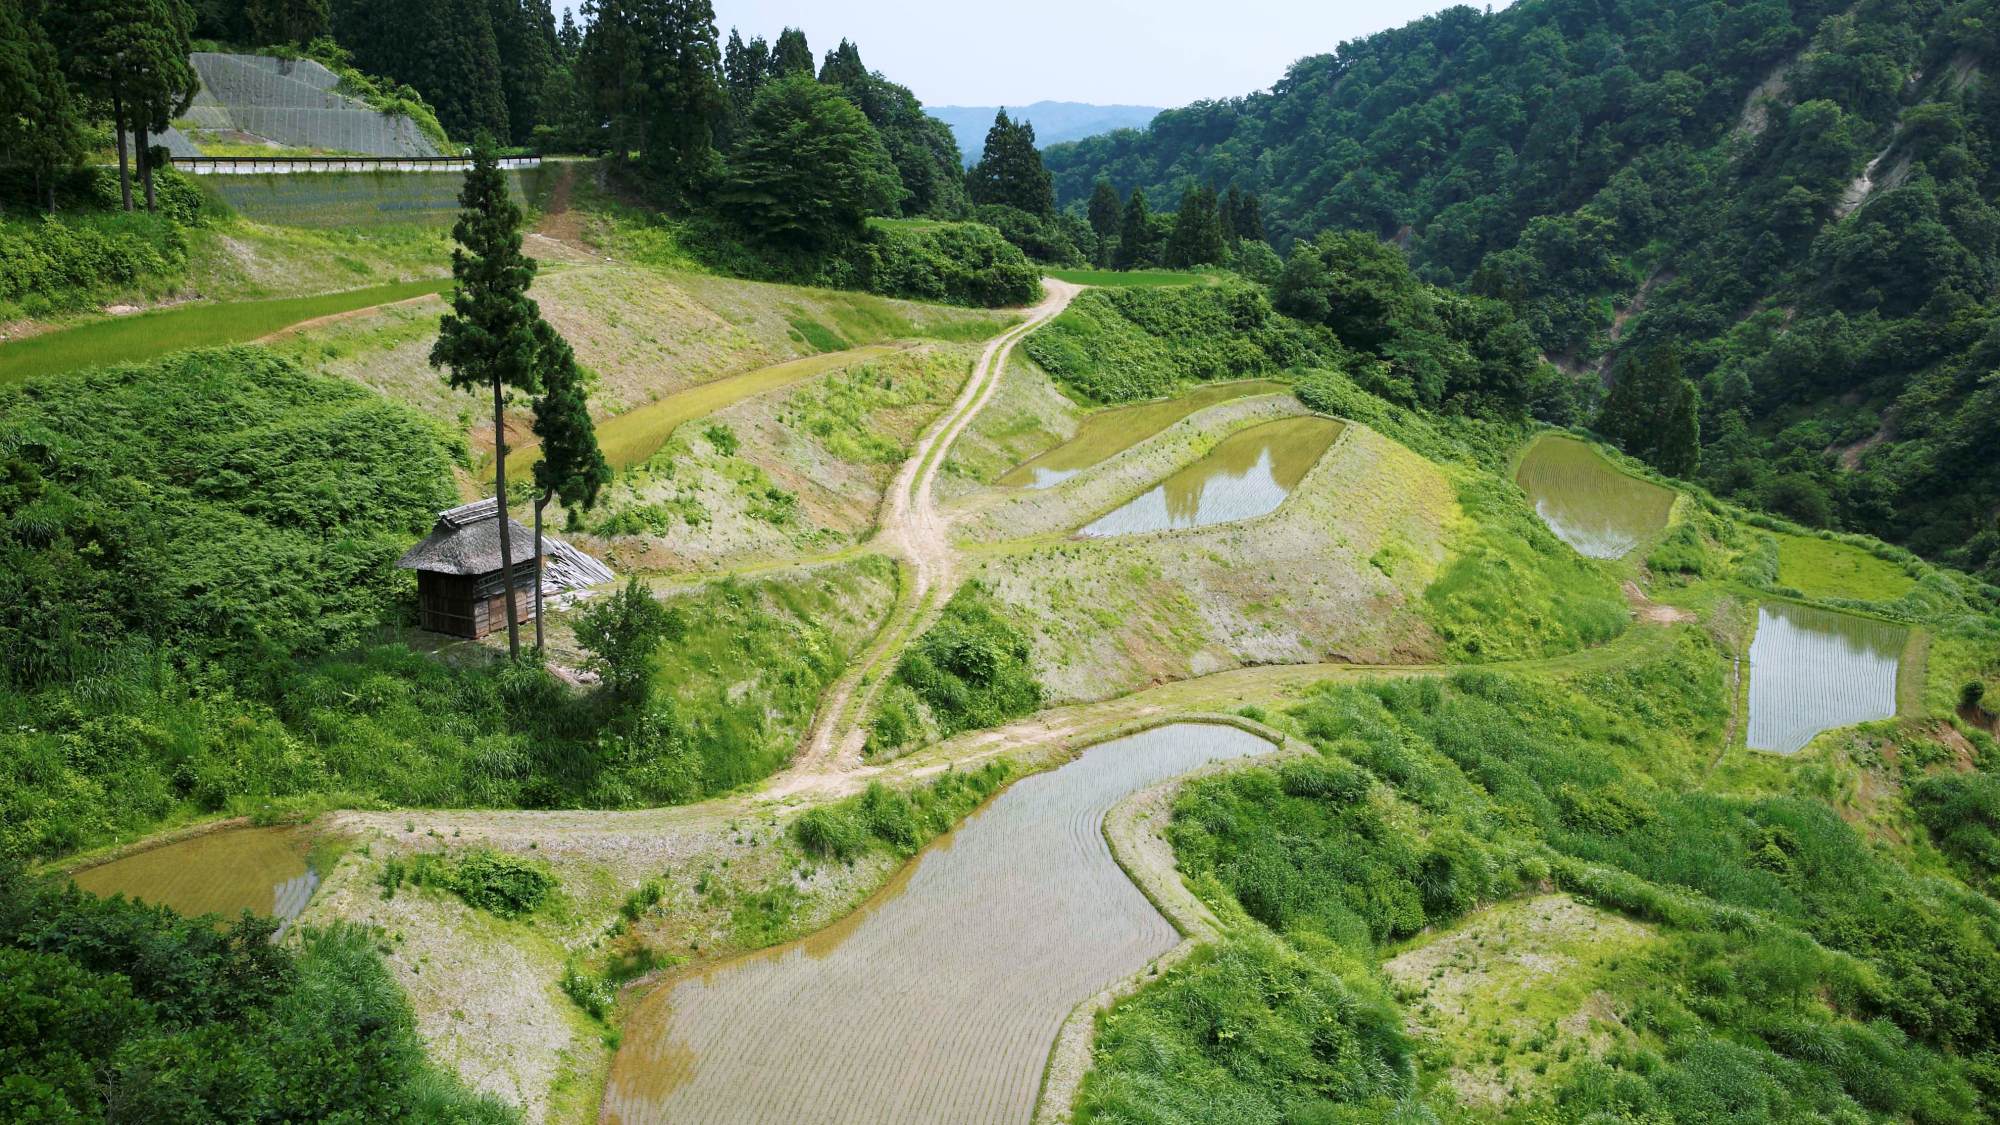 【棚田風景】日本の里百景に選ばれた美しい景色が広がります。